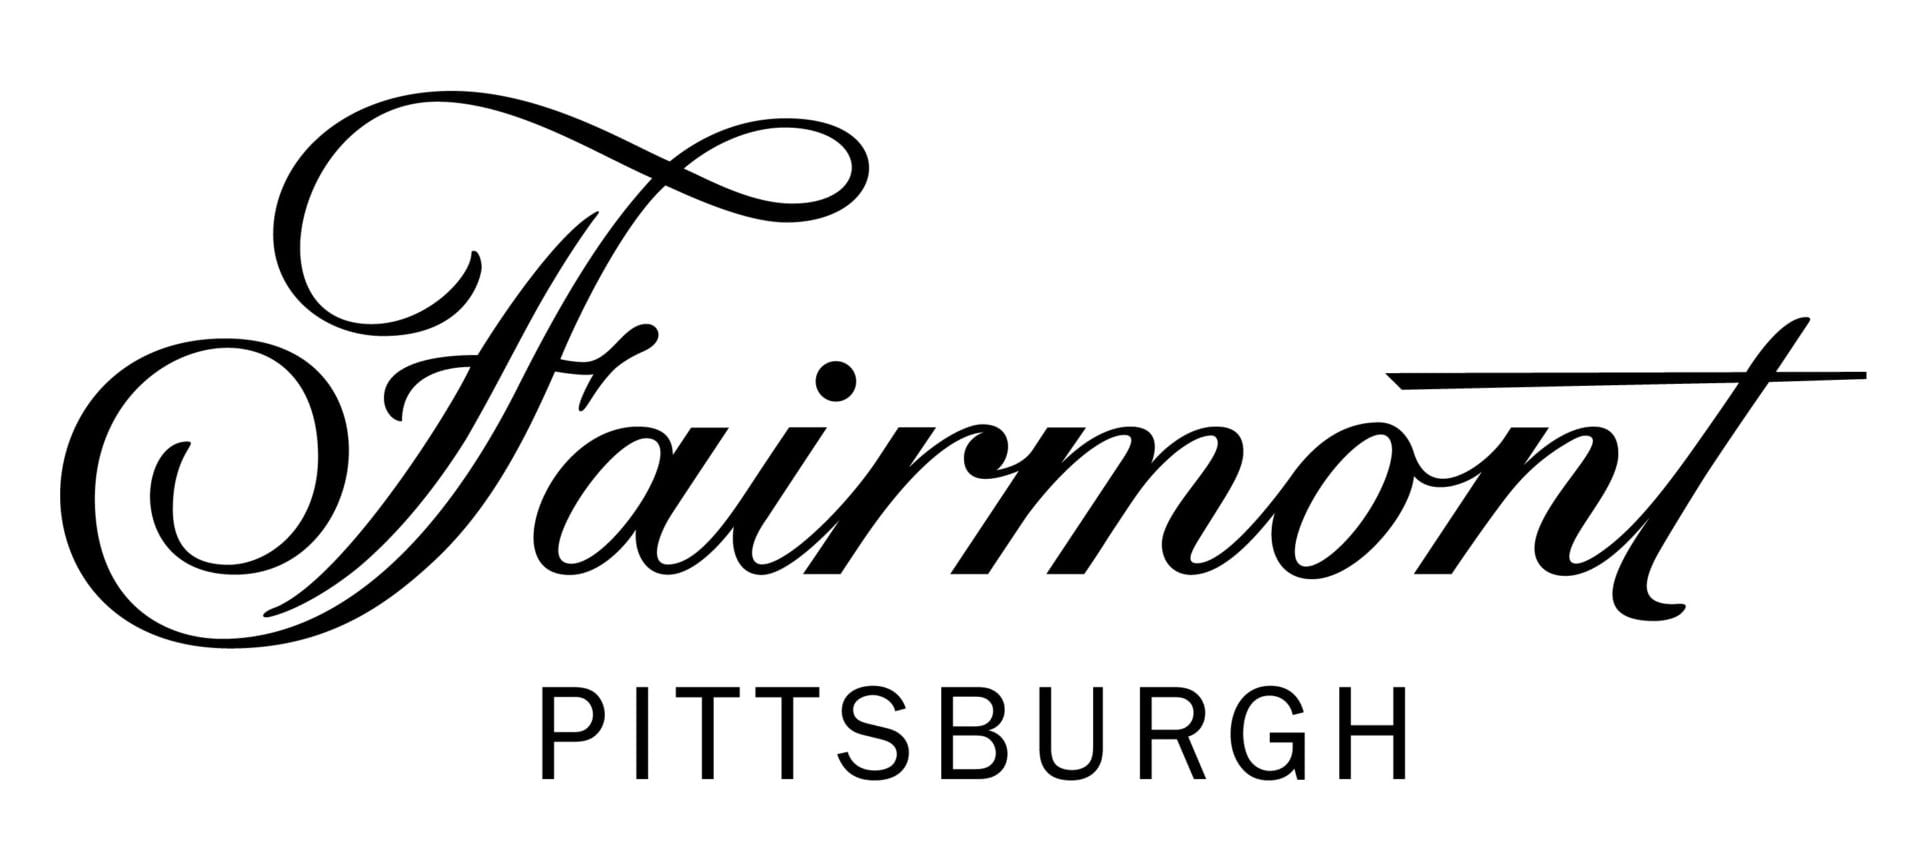 Farimont Logo - Fairmont Pittsburgh Logo